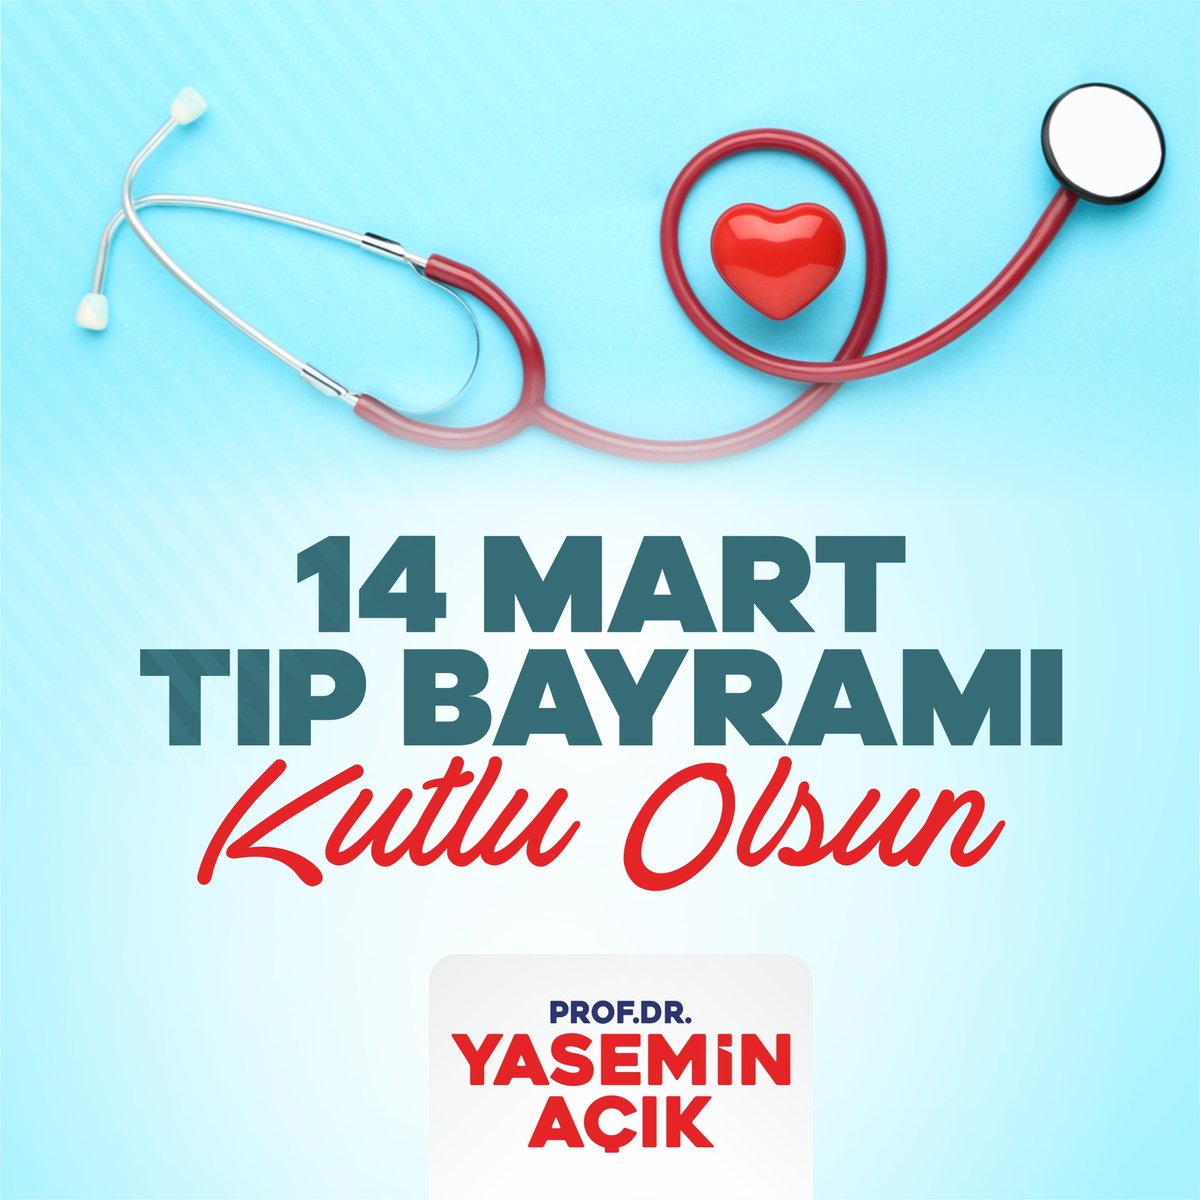 Toplum sağlığı için büyük bir özveri ve fedakârlıkla emek veren tüm sağlık çalışanlarının 14 Mart Tıp Bayramı kutlu olsun.